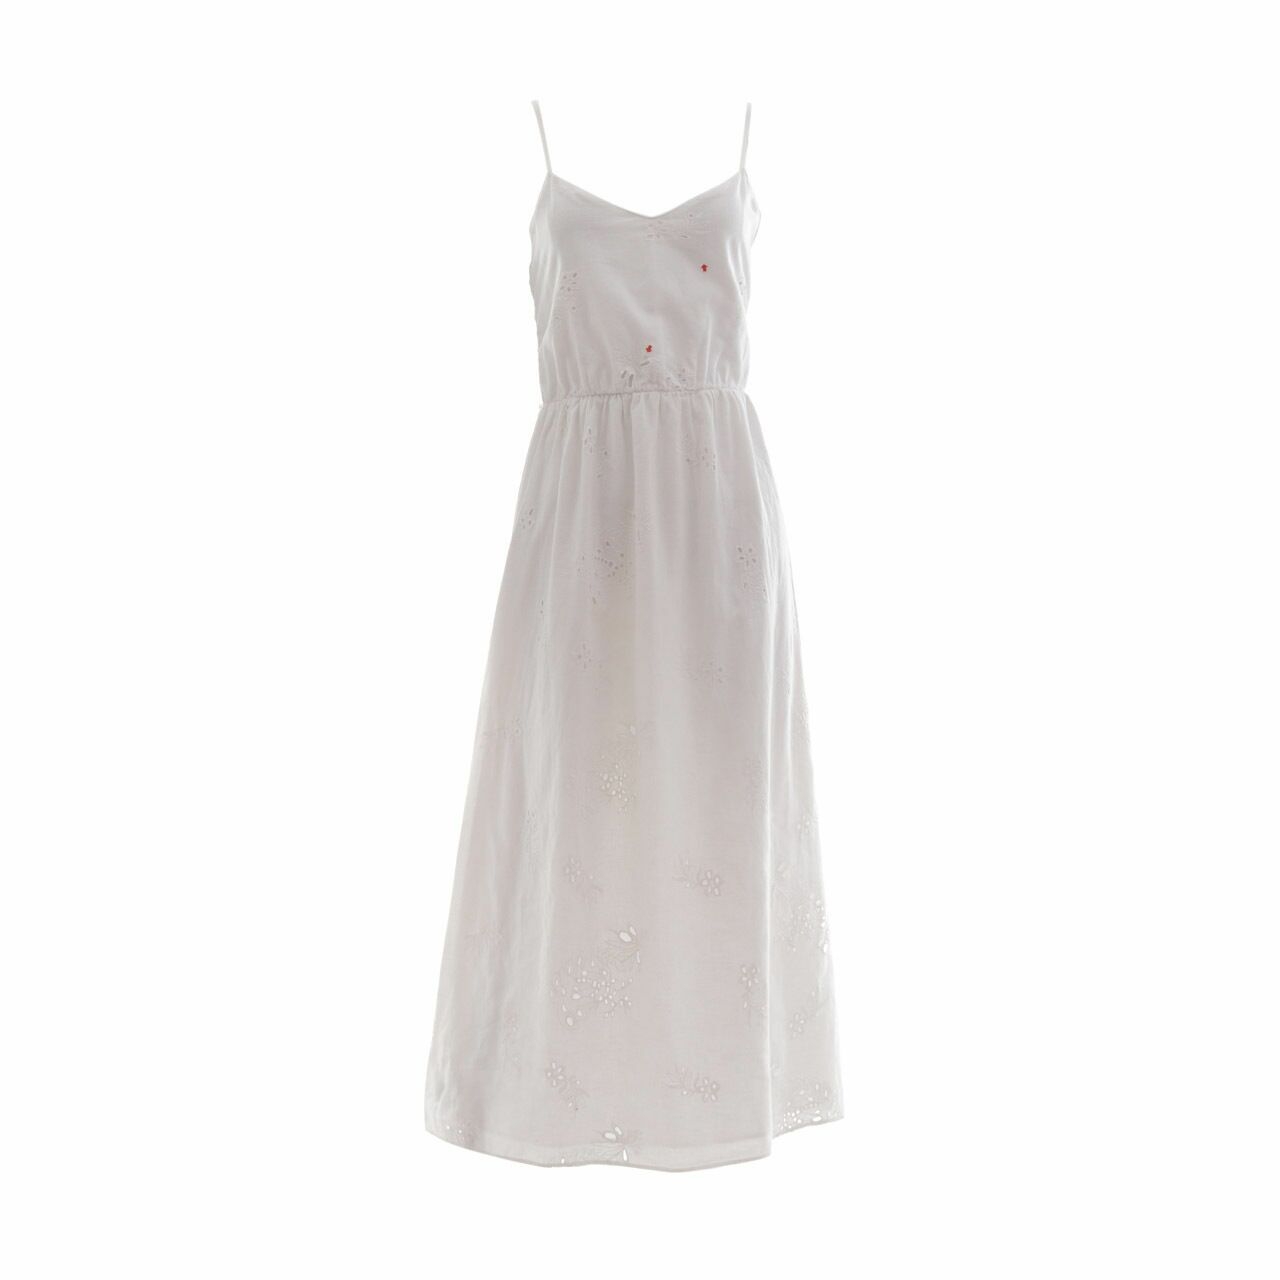 Zara White Long Dress